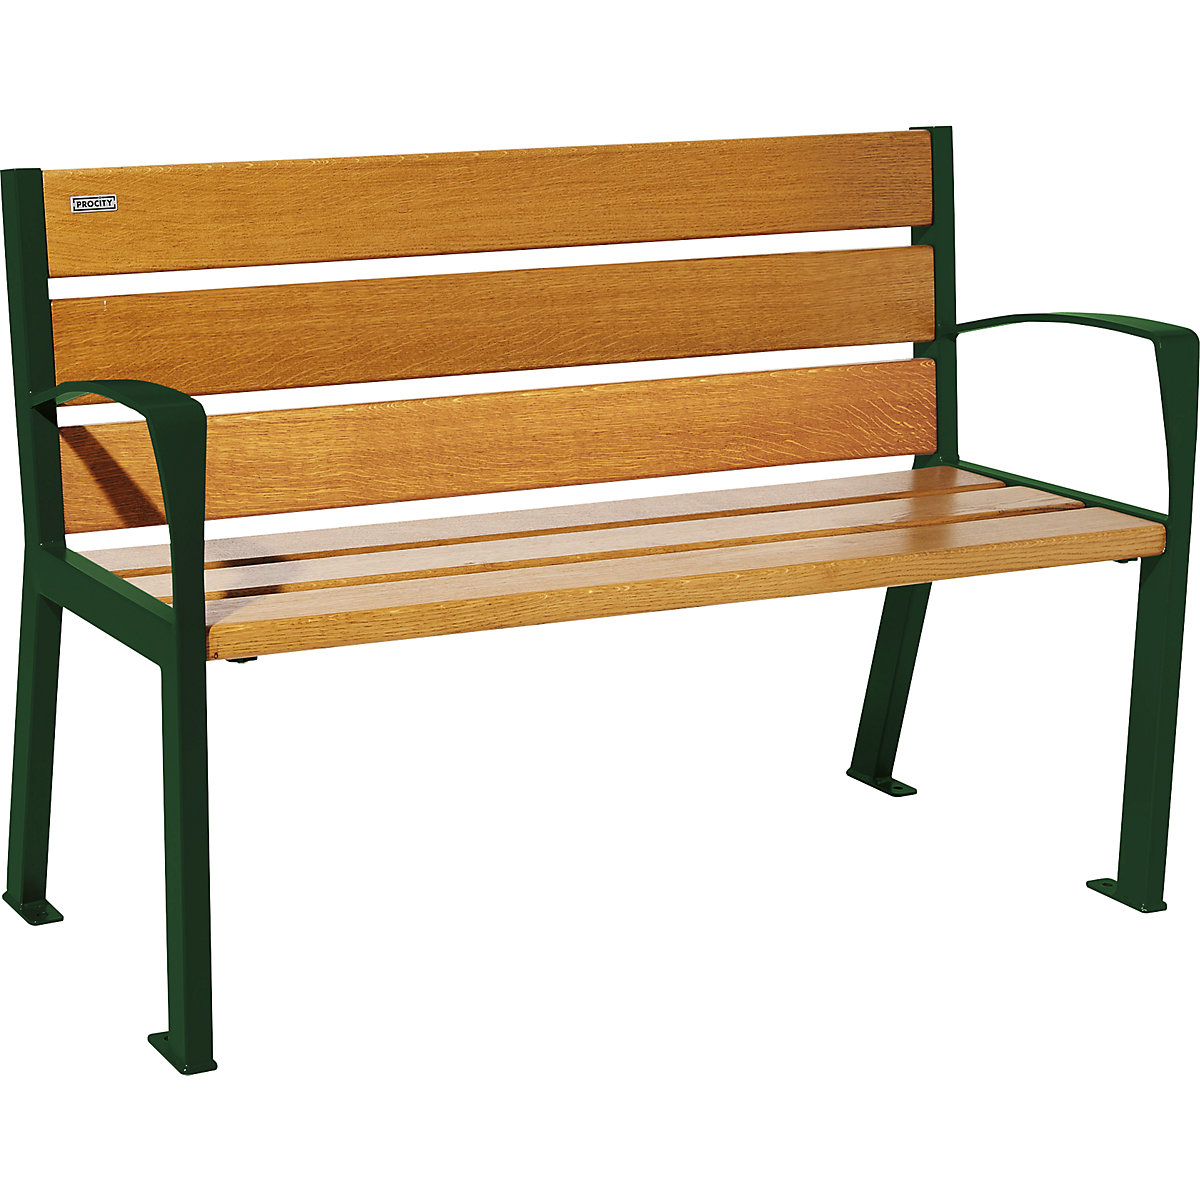 PROCITY – Drvena klupa za sjedenje SILAOS® s naslonom za leđa, visina 866 mm, dužina 1200 mm, u mahovina zelenoj boji, imitacija svijetlog hrasta